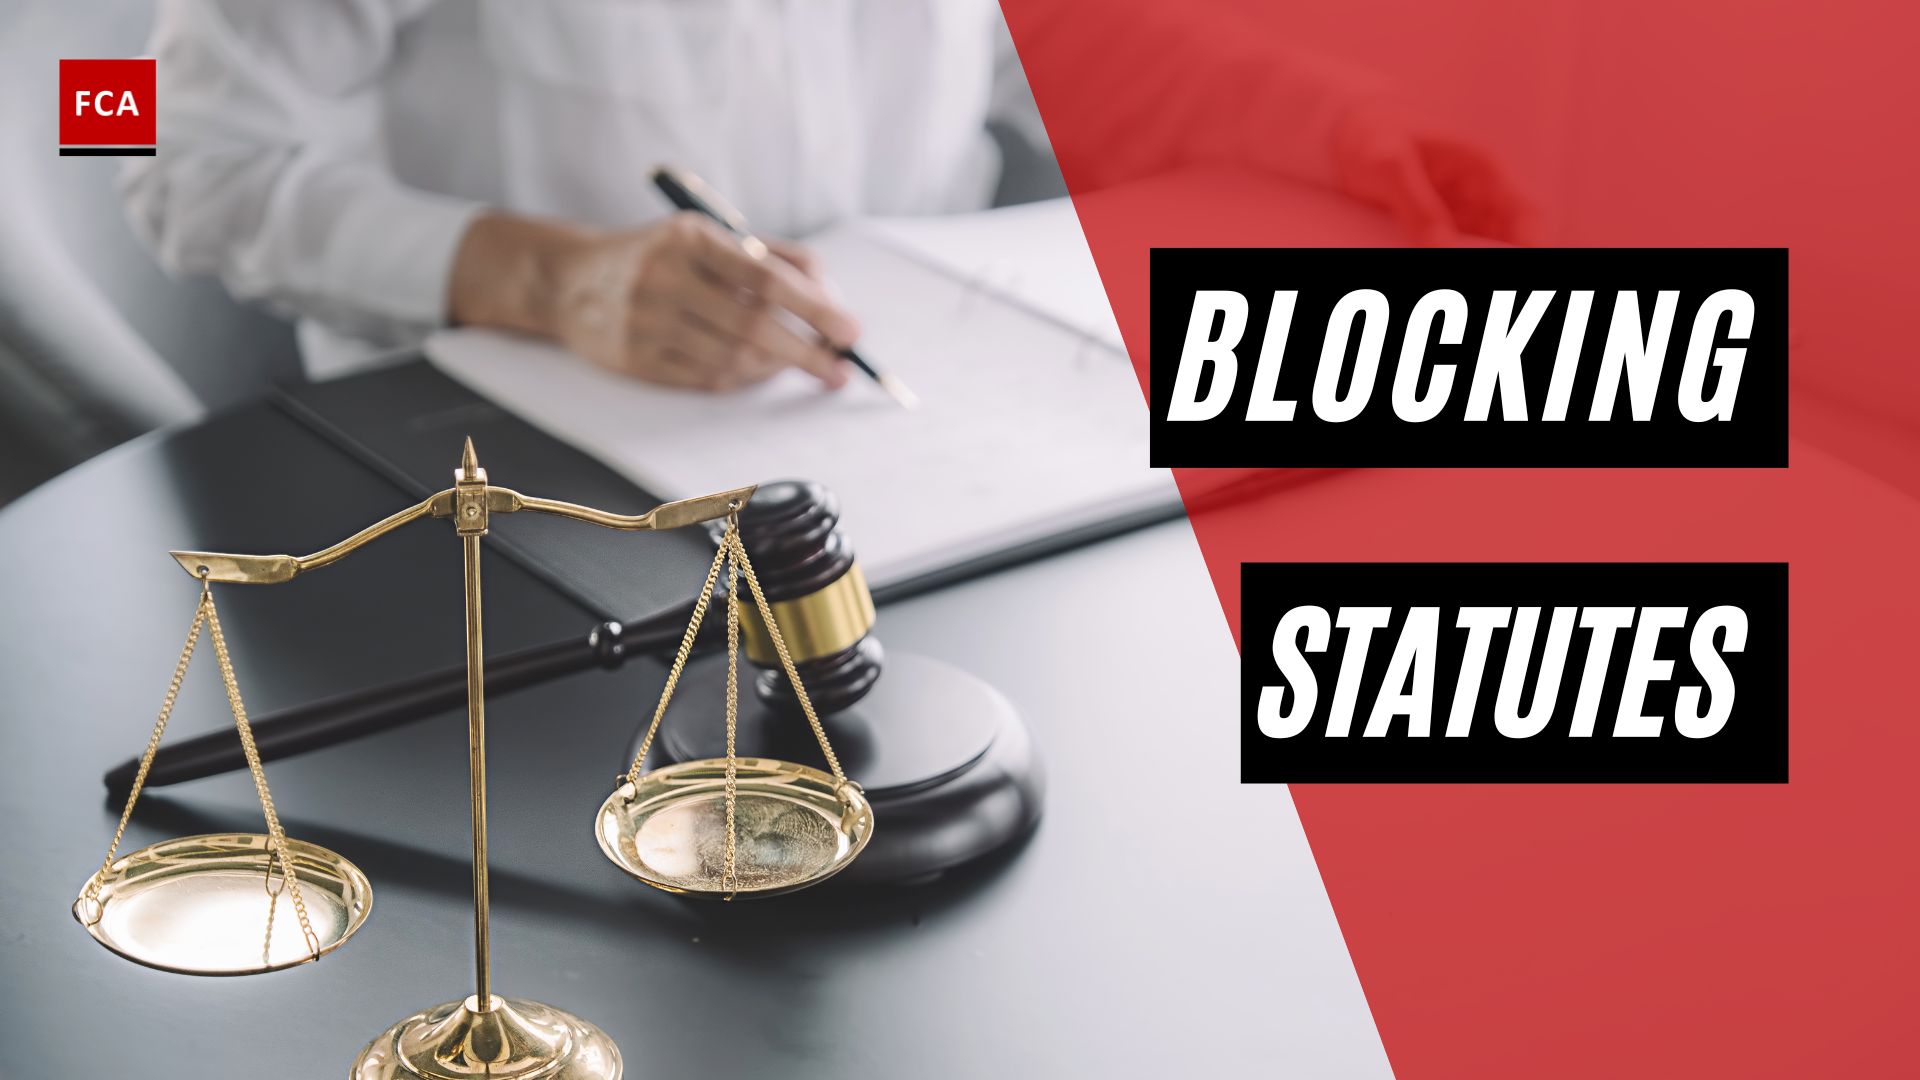 Blocking Statutes